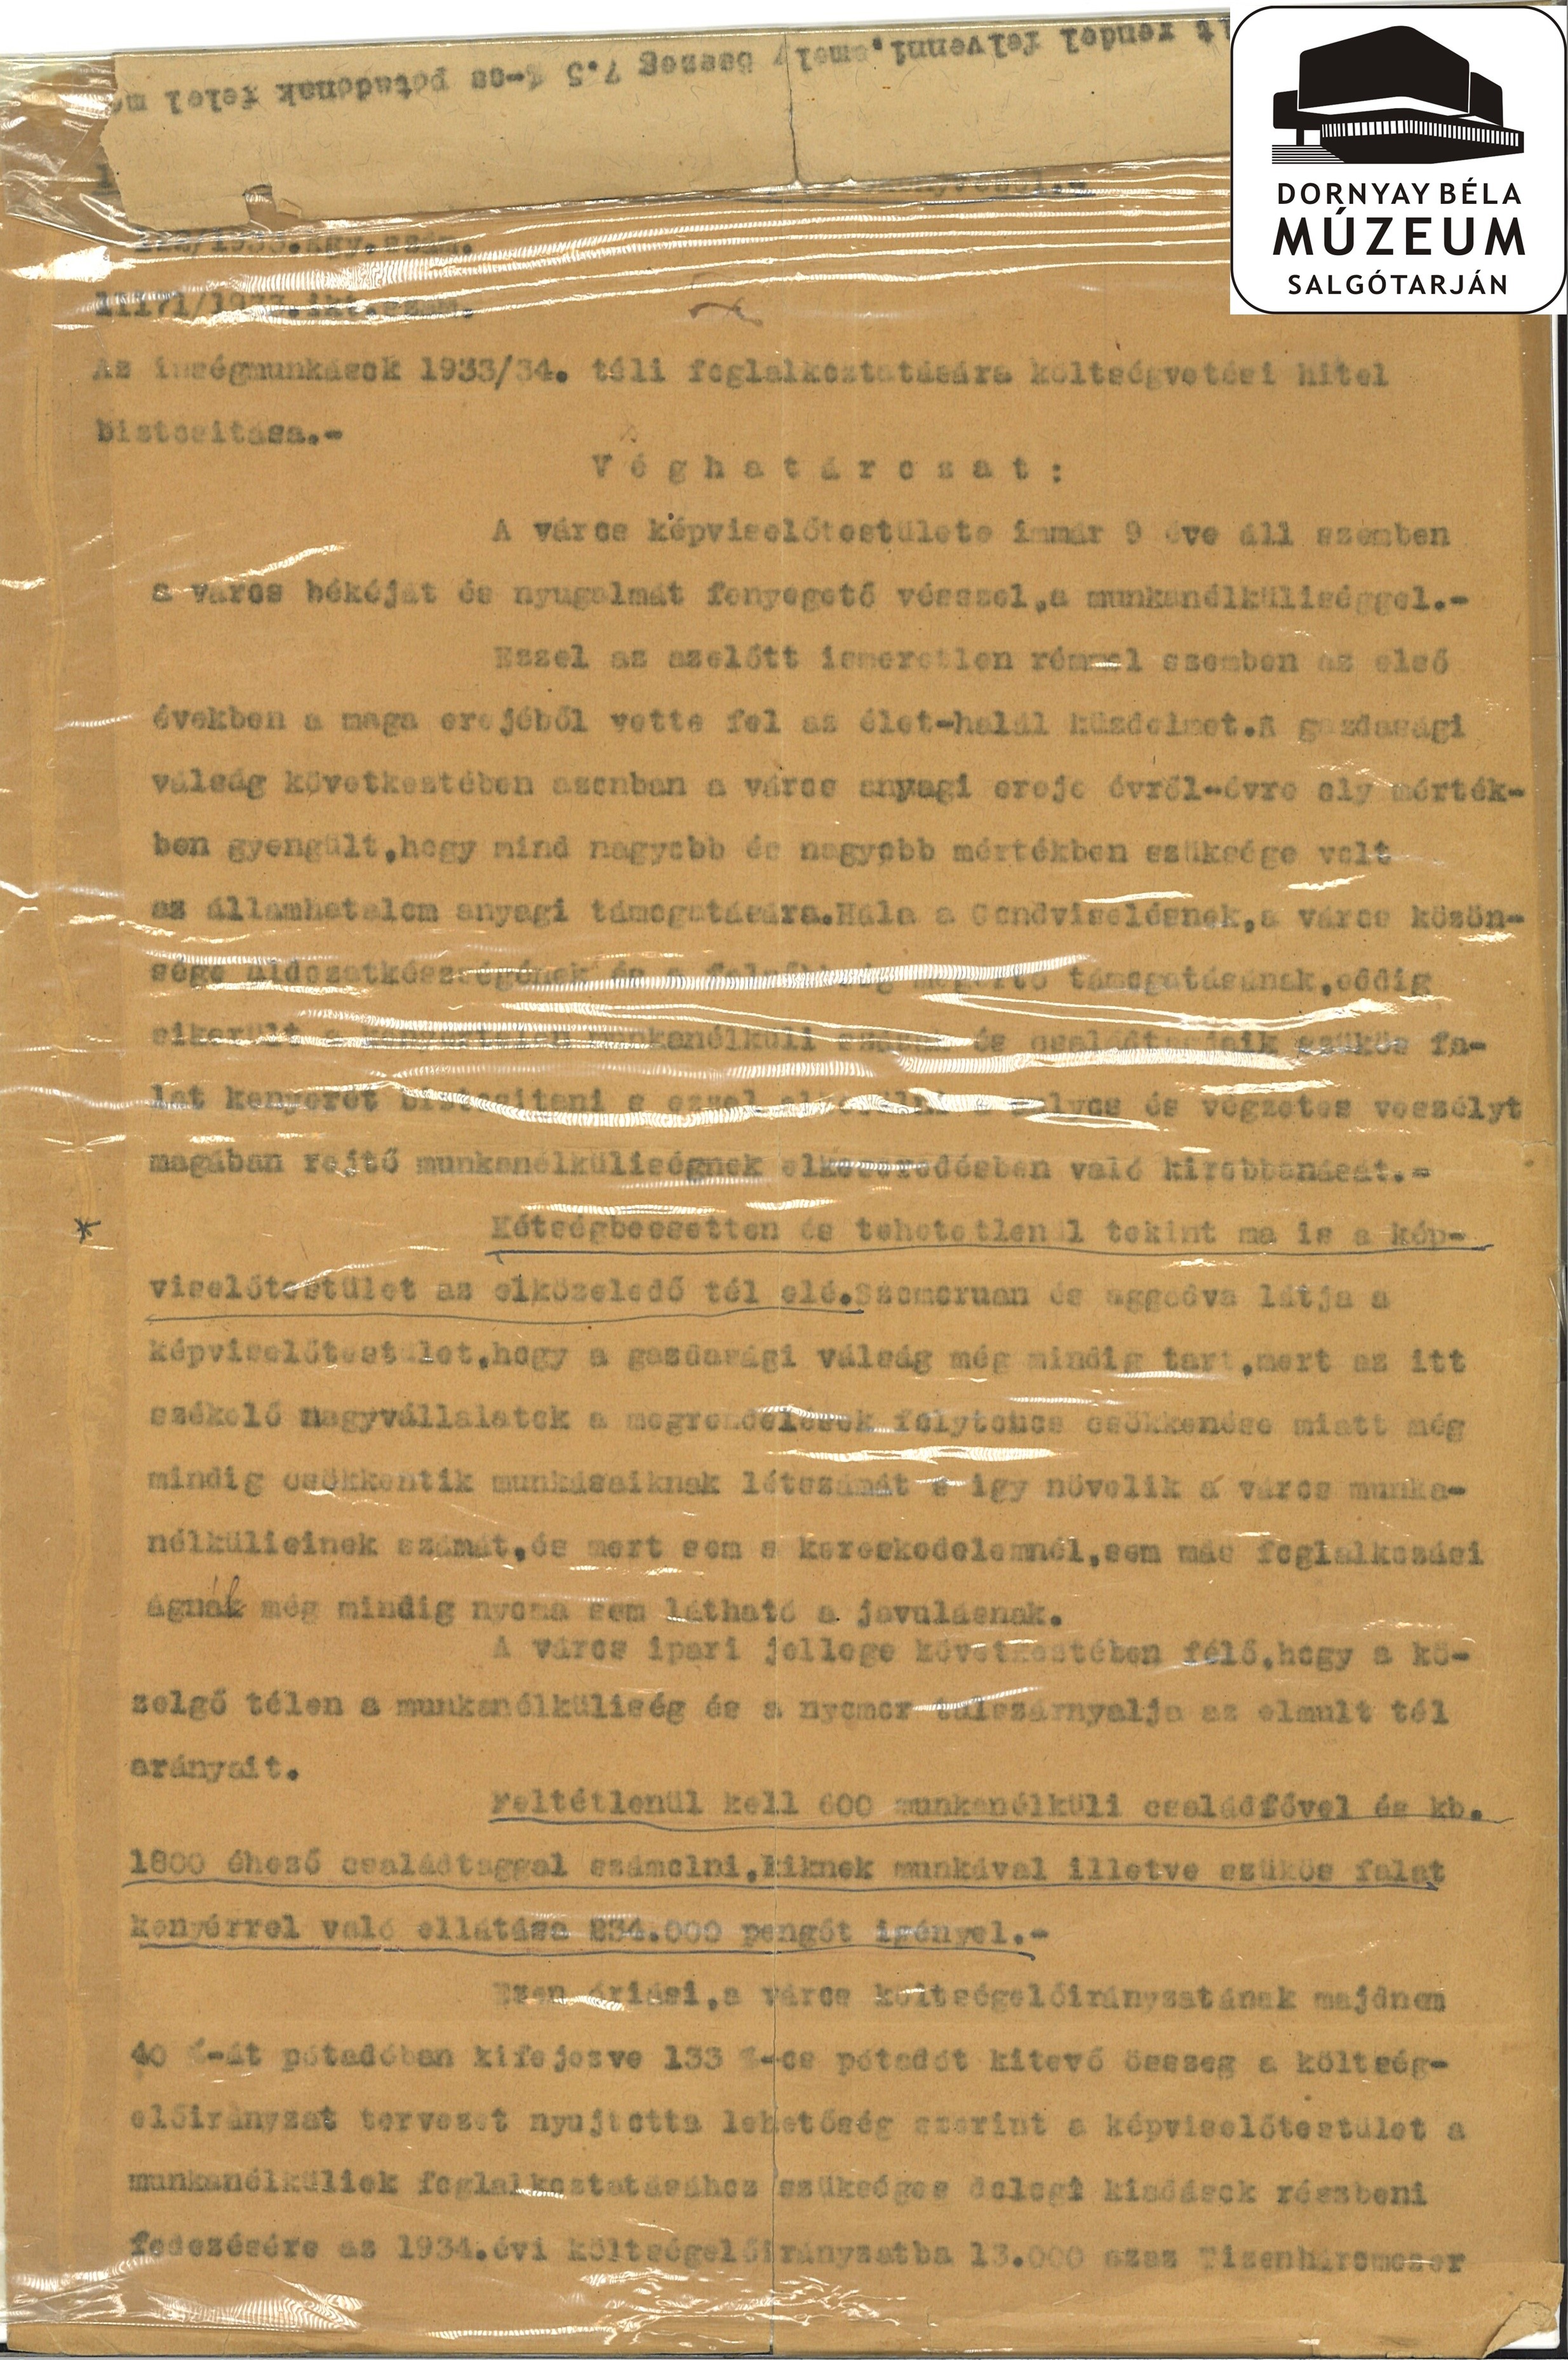 Salgótarjáni ínségmunkások 1933/34 évi foglalkoztatására költségvetési hitel biztosítása (Dornyay Béla Múzeum, Salgótarján CC BY-NC-SA)